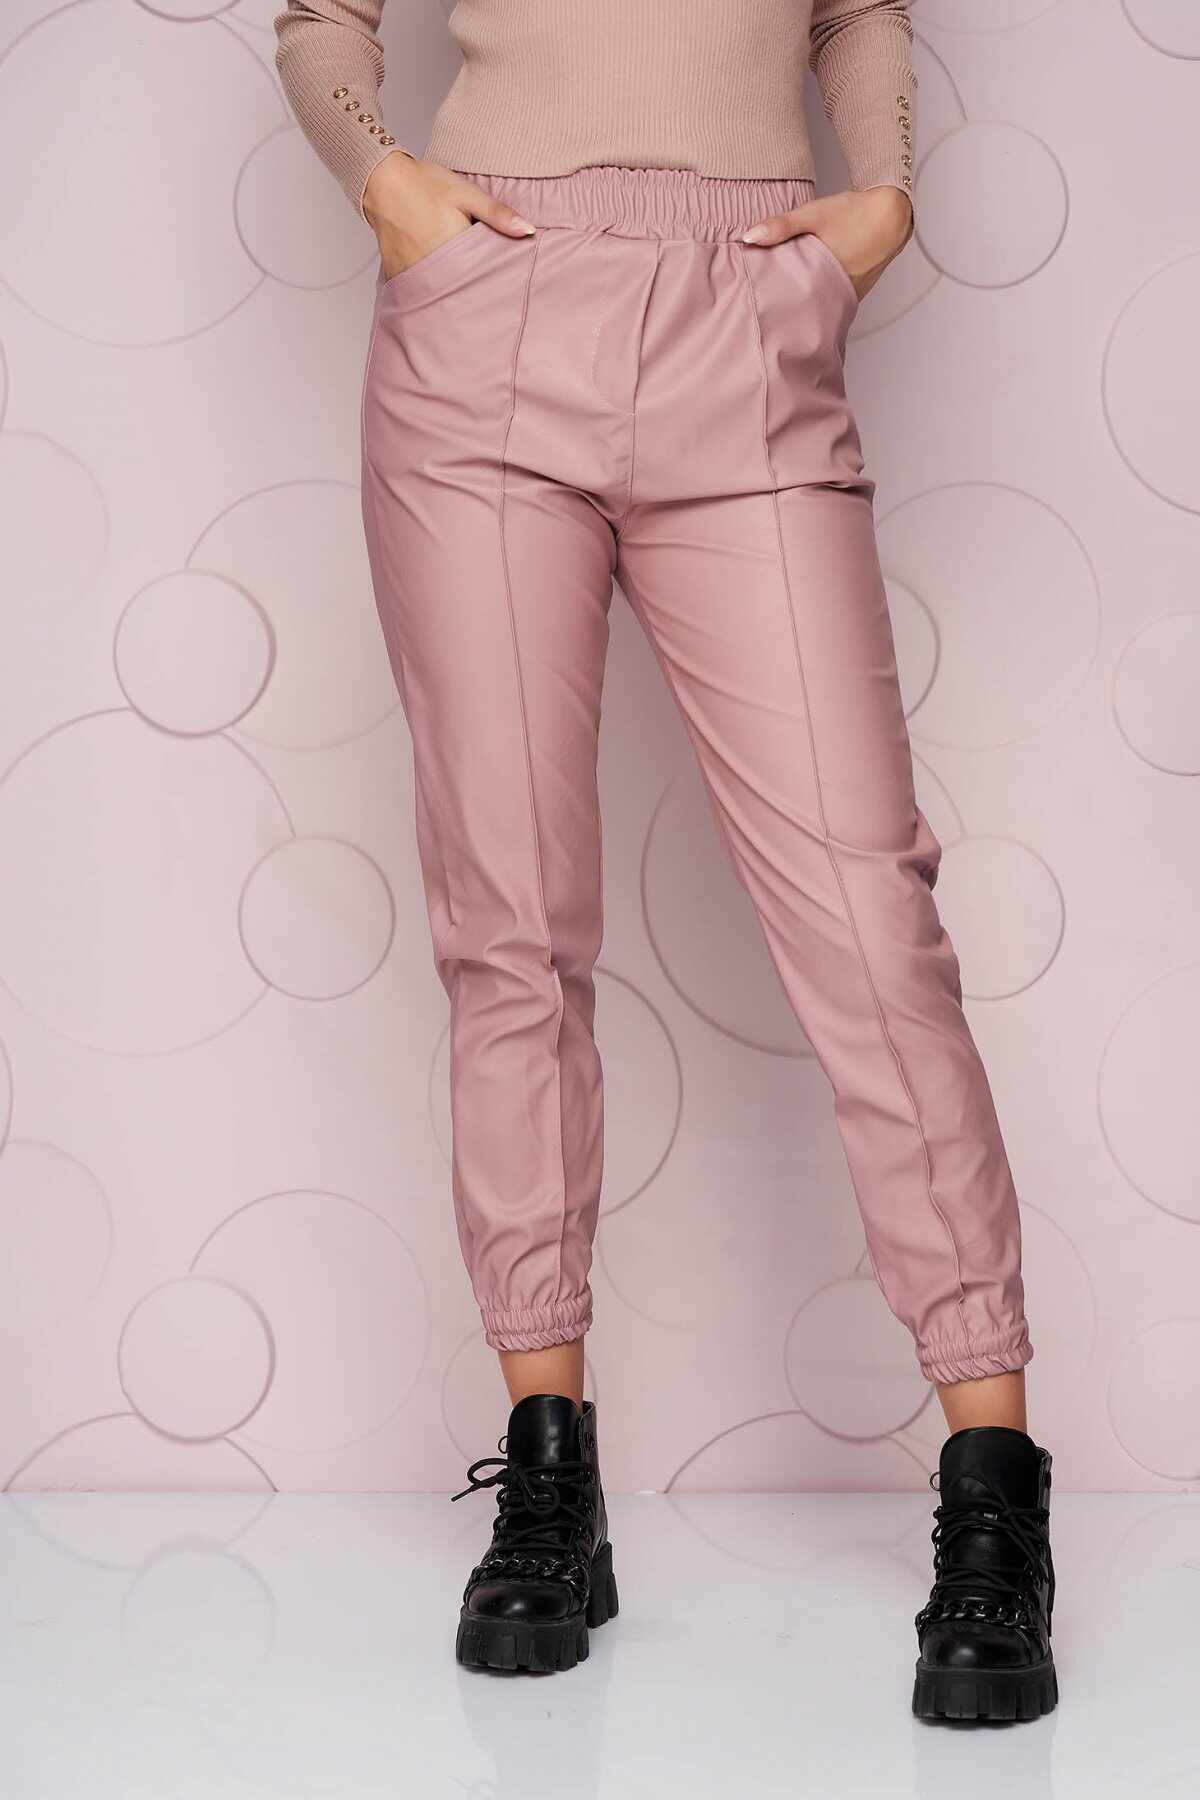 Pantaloni SunShine roz lunga cu croi larg si talie normala din material din piele ecologica elastica si buzunare laterale